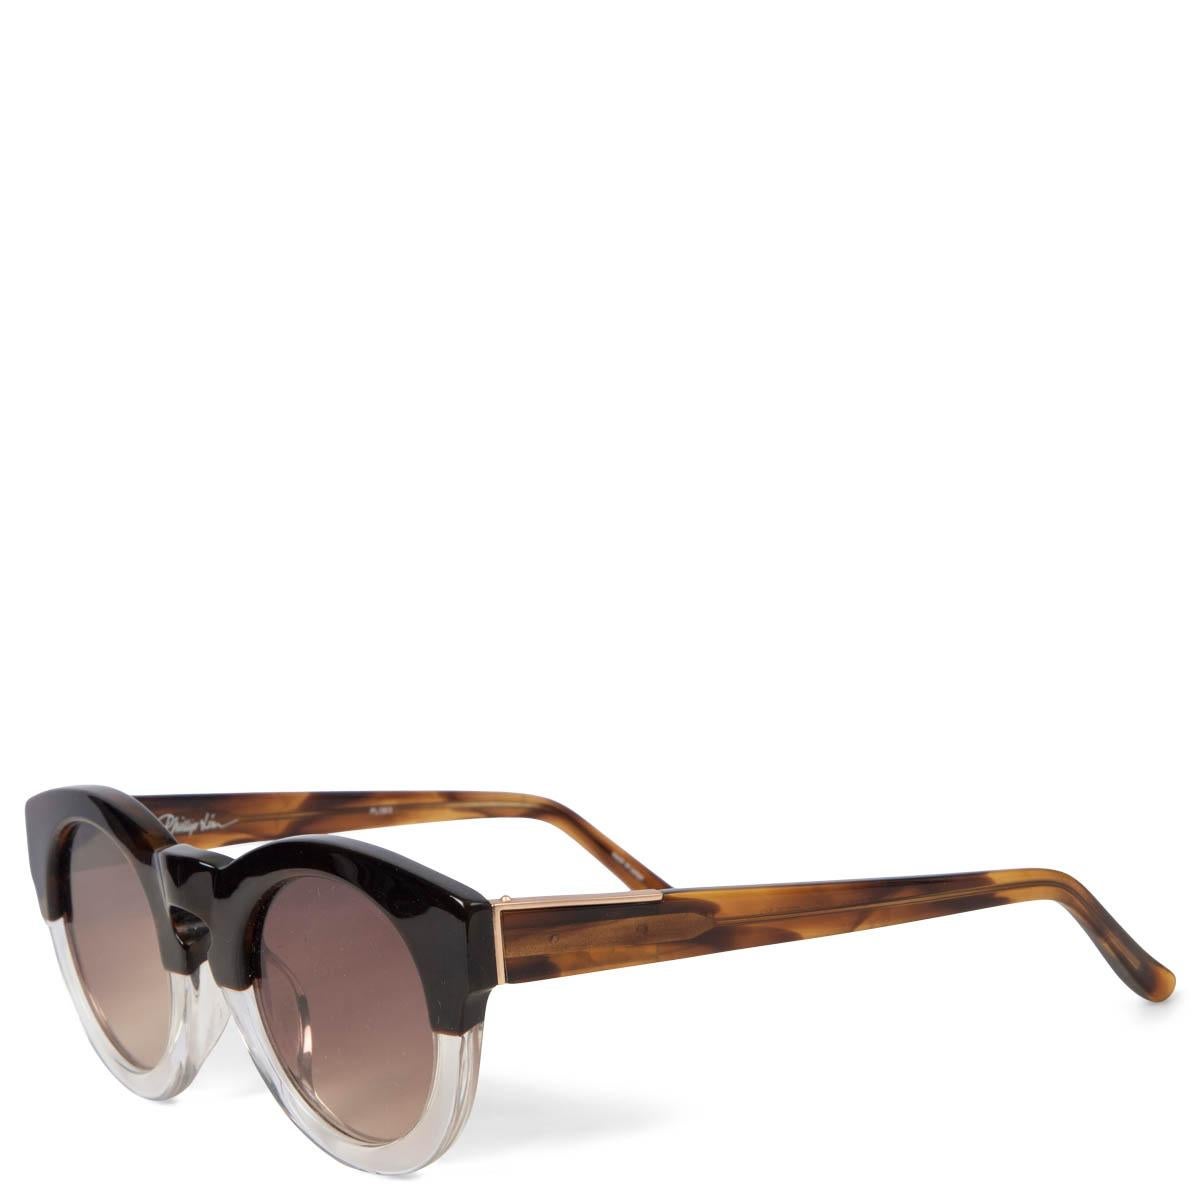 100% authentiques lunettes de soleil 3.1 Phillips Lim Cat3 bicolores en acétate noir et transparent avec branches en tortue marron et ambre. Elles ont été portées et présentent quelques légères rayures sur la lentille gauche. En général en très bon